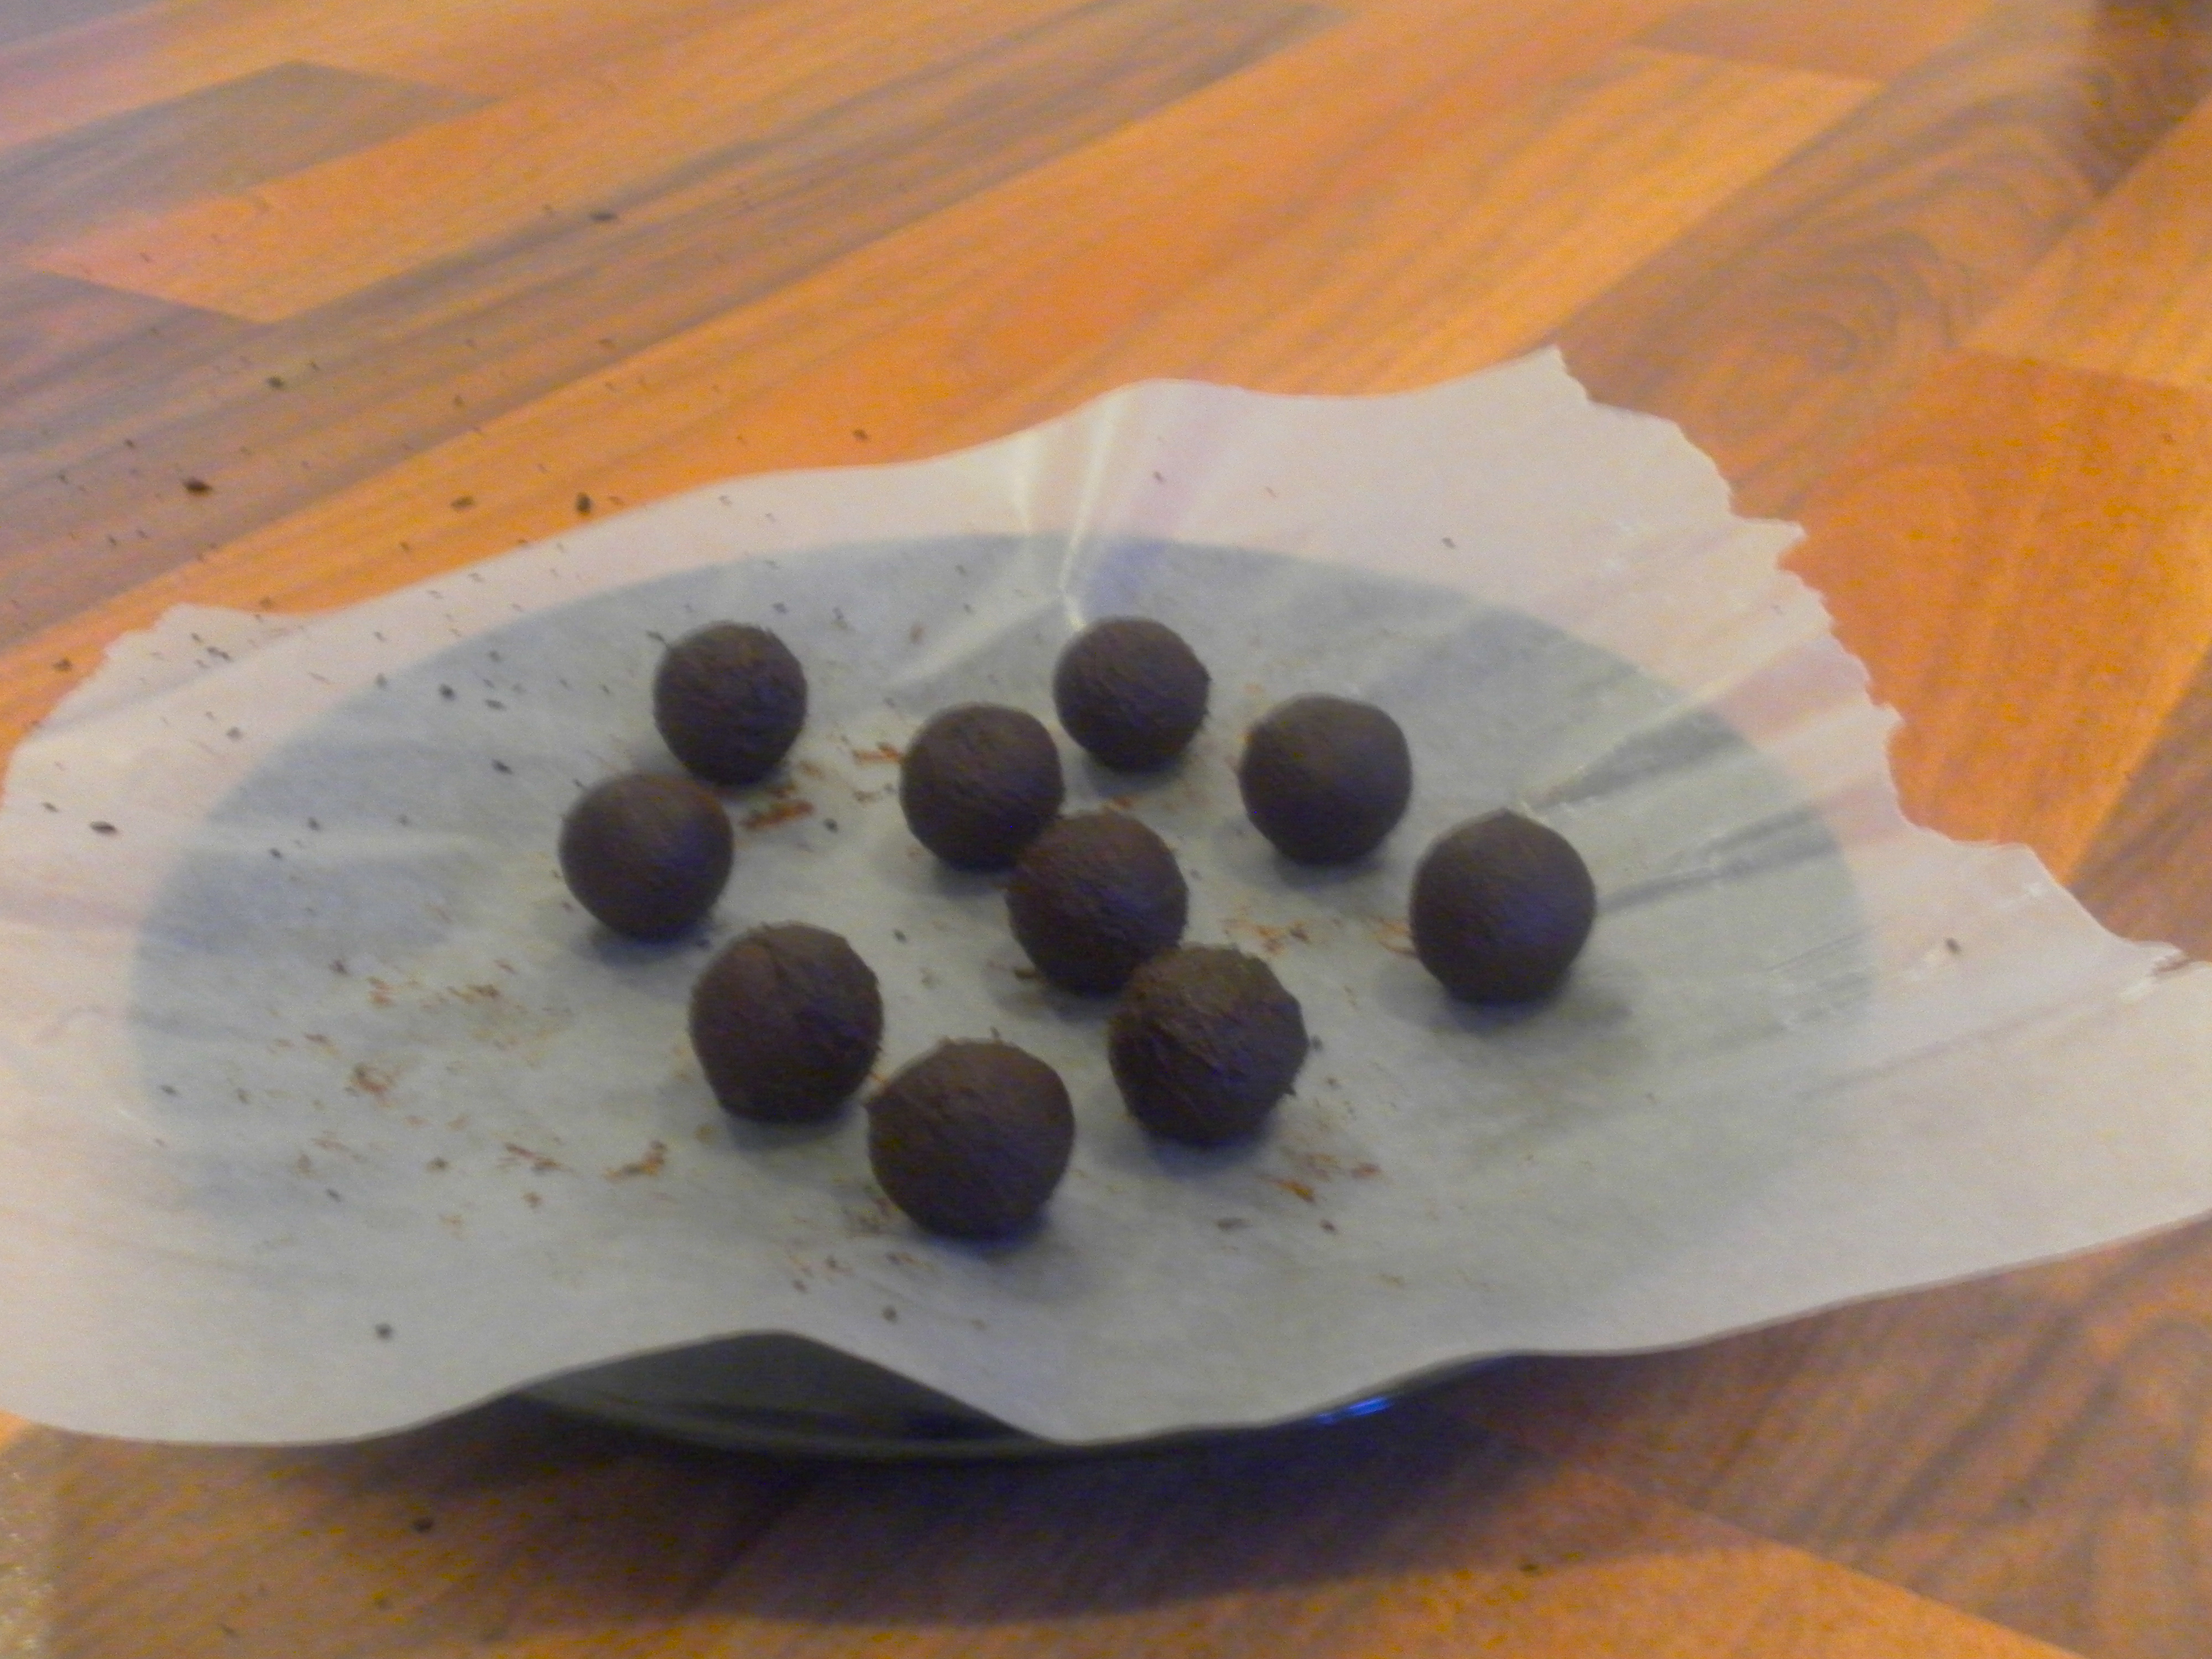 Shaping chocolate truffles